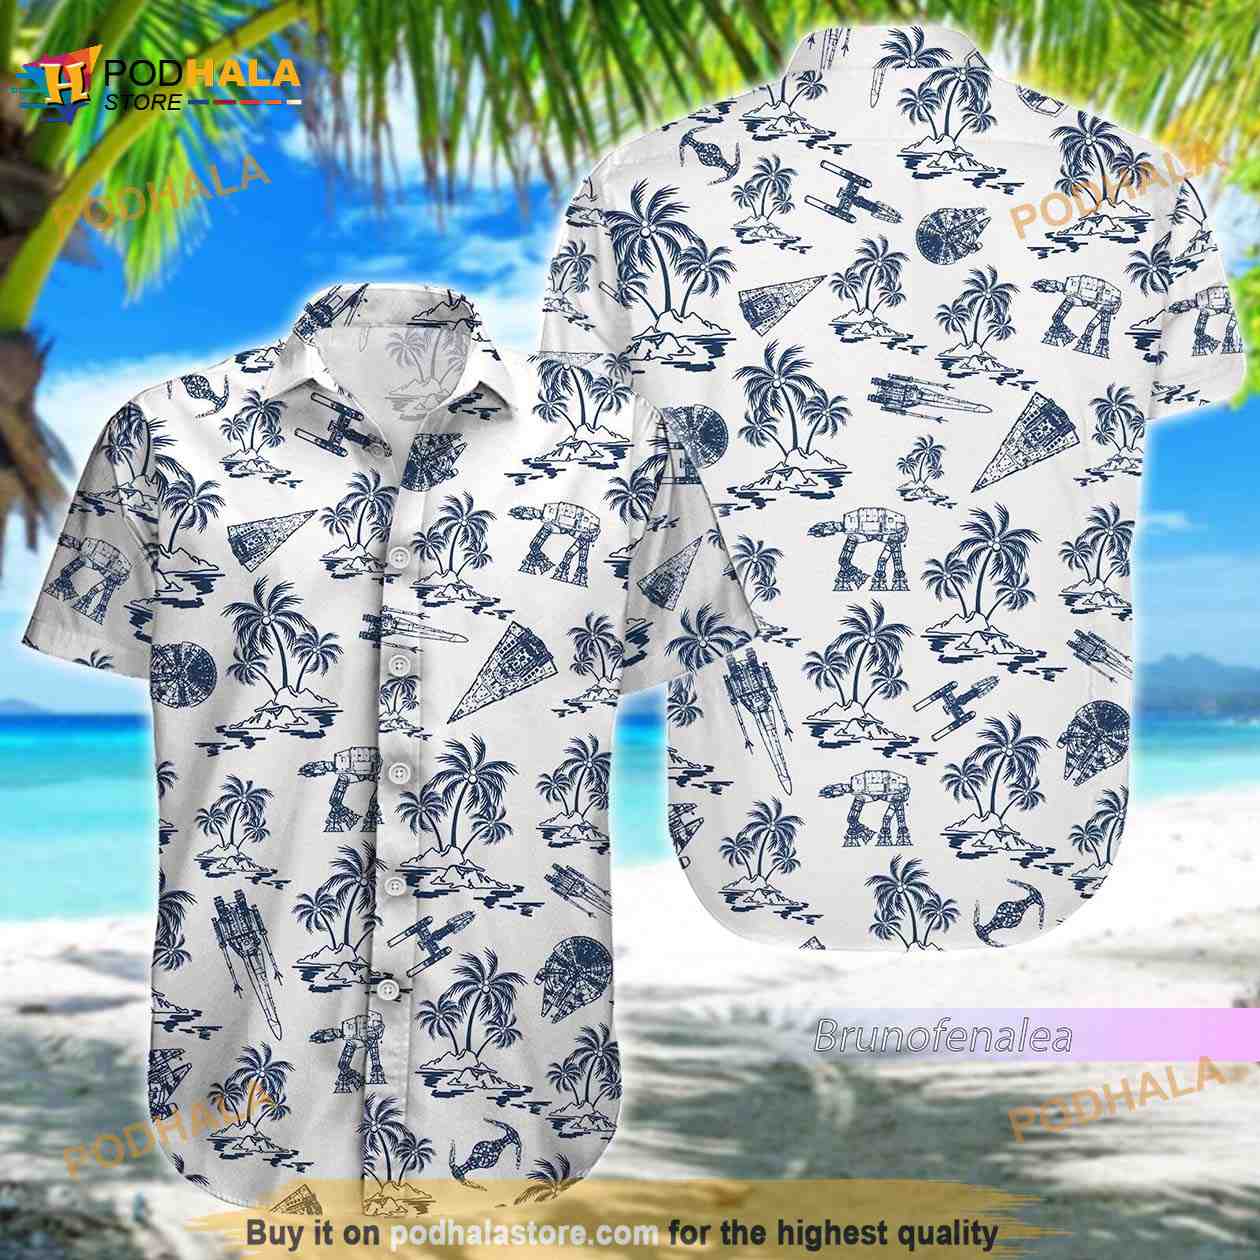 Kansas City Chiefs Hawaiian Shirt Baby Yoda Kansas City Chiefs Apparel  Hawaii Shirt - Best Seller Shirts Design In Usa